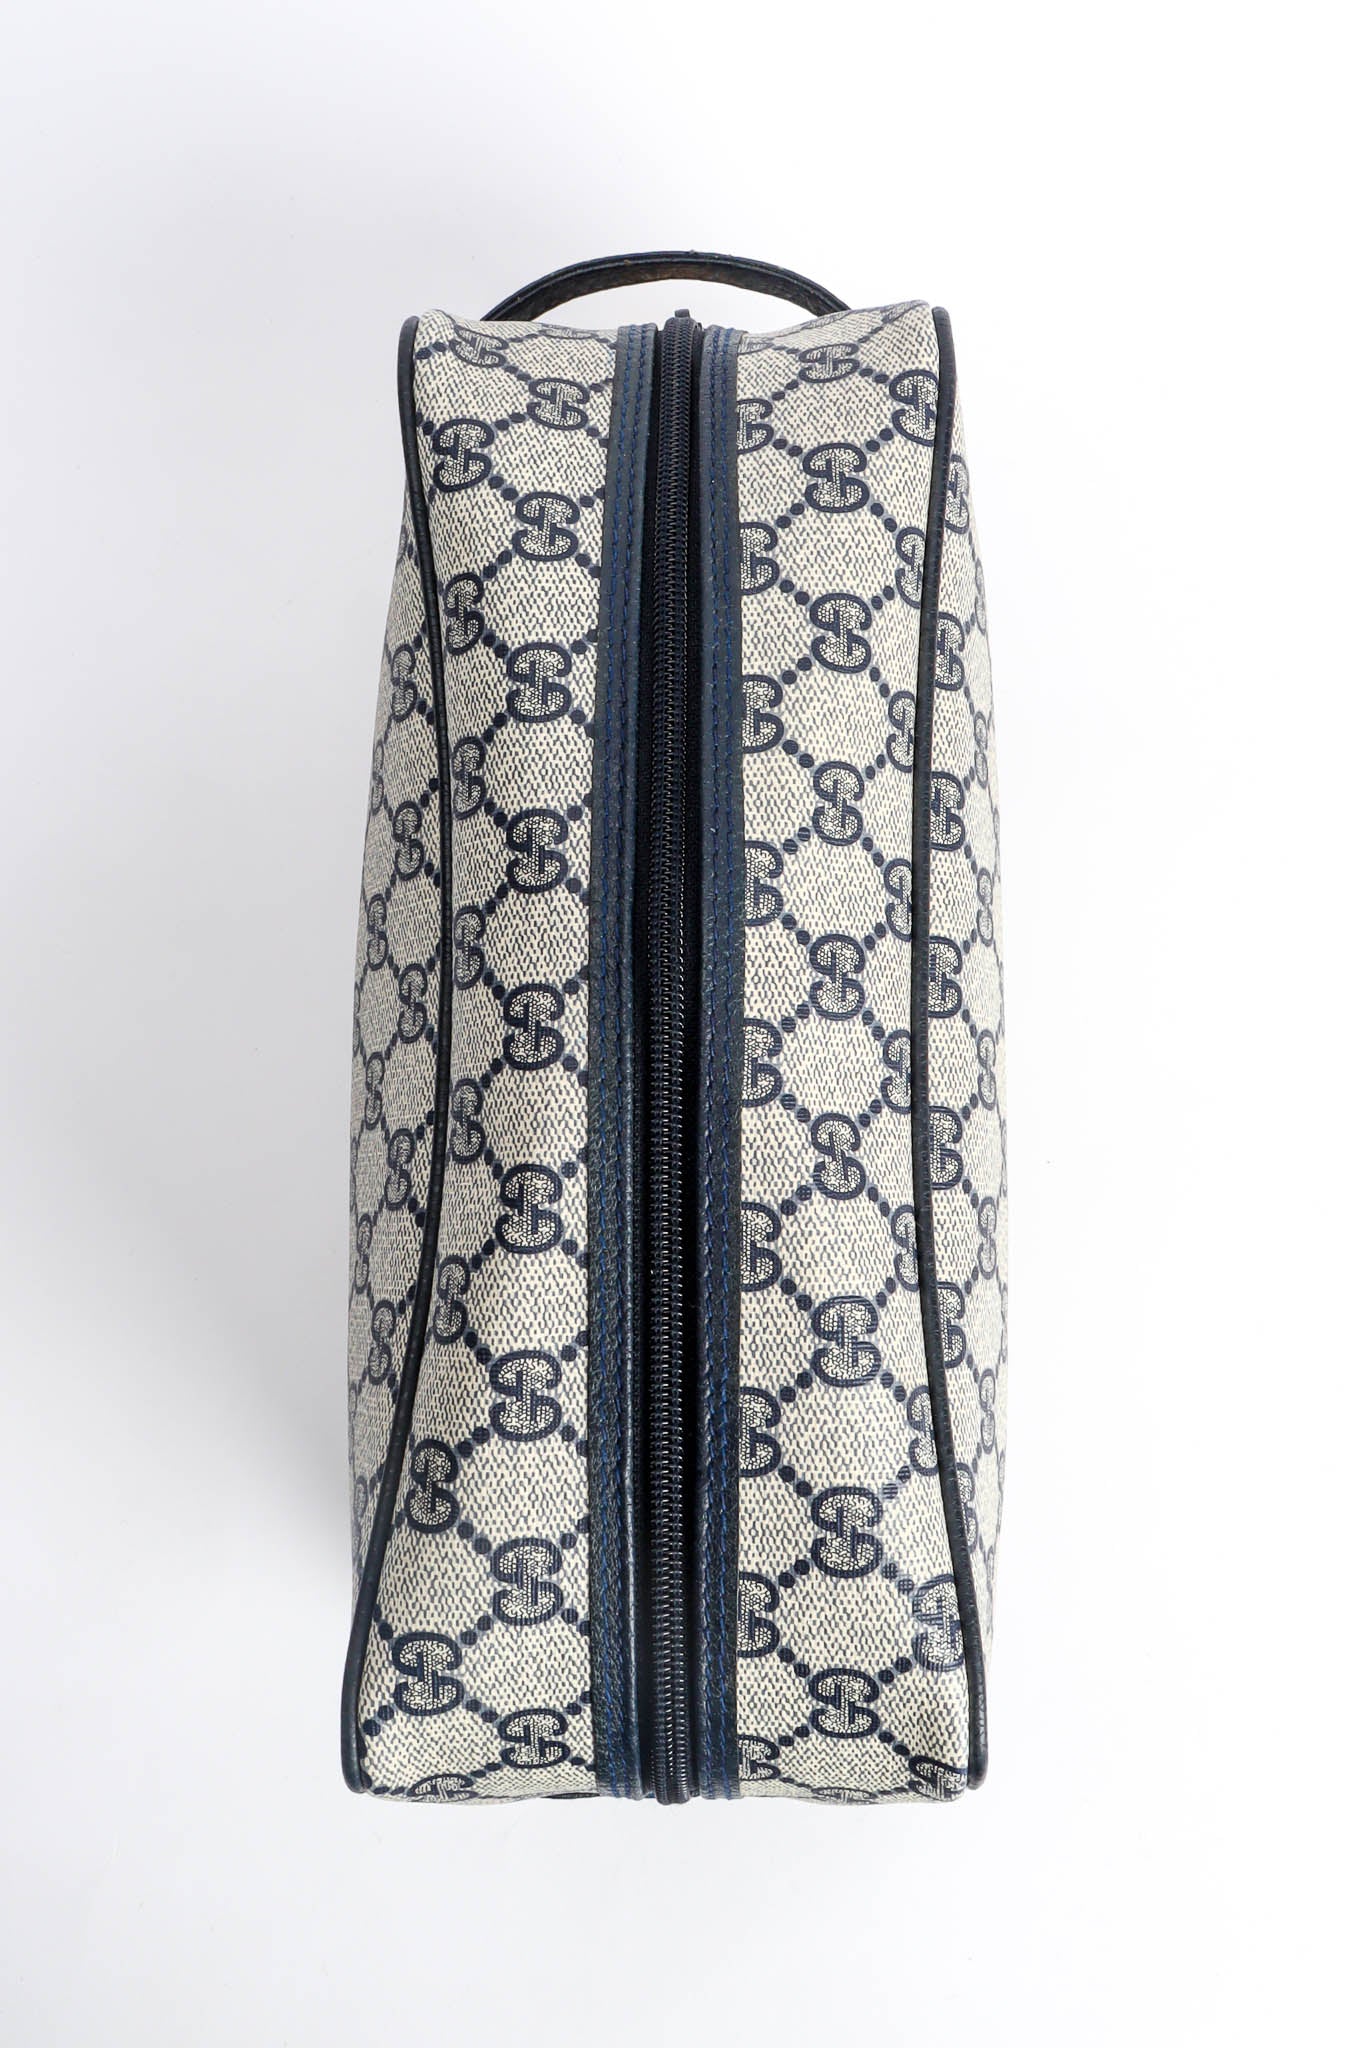 Vintage Gucci GG Monogram Travel Bag Case top @ Recess Los Angeles